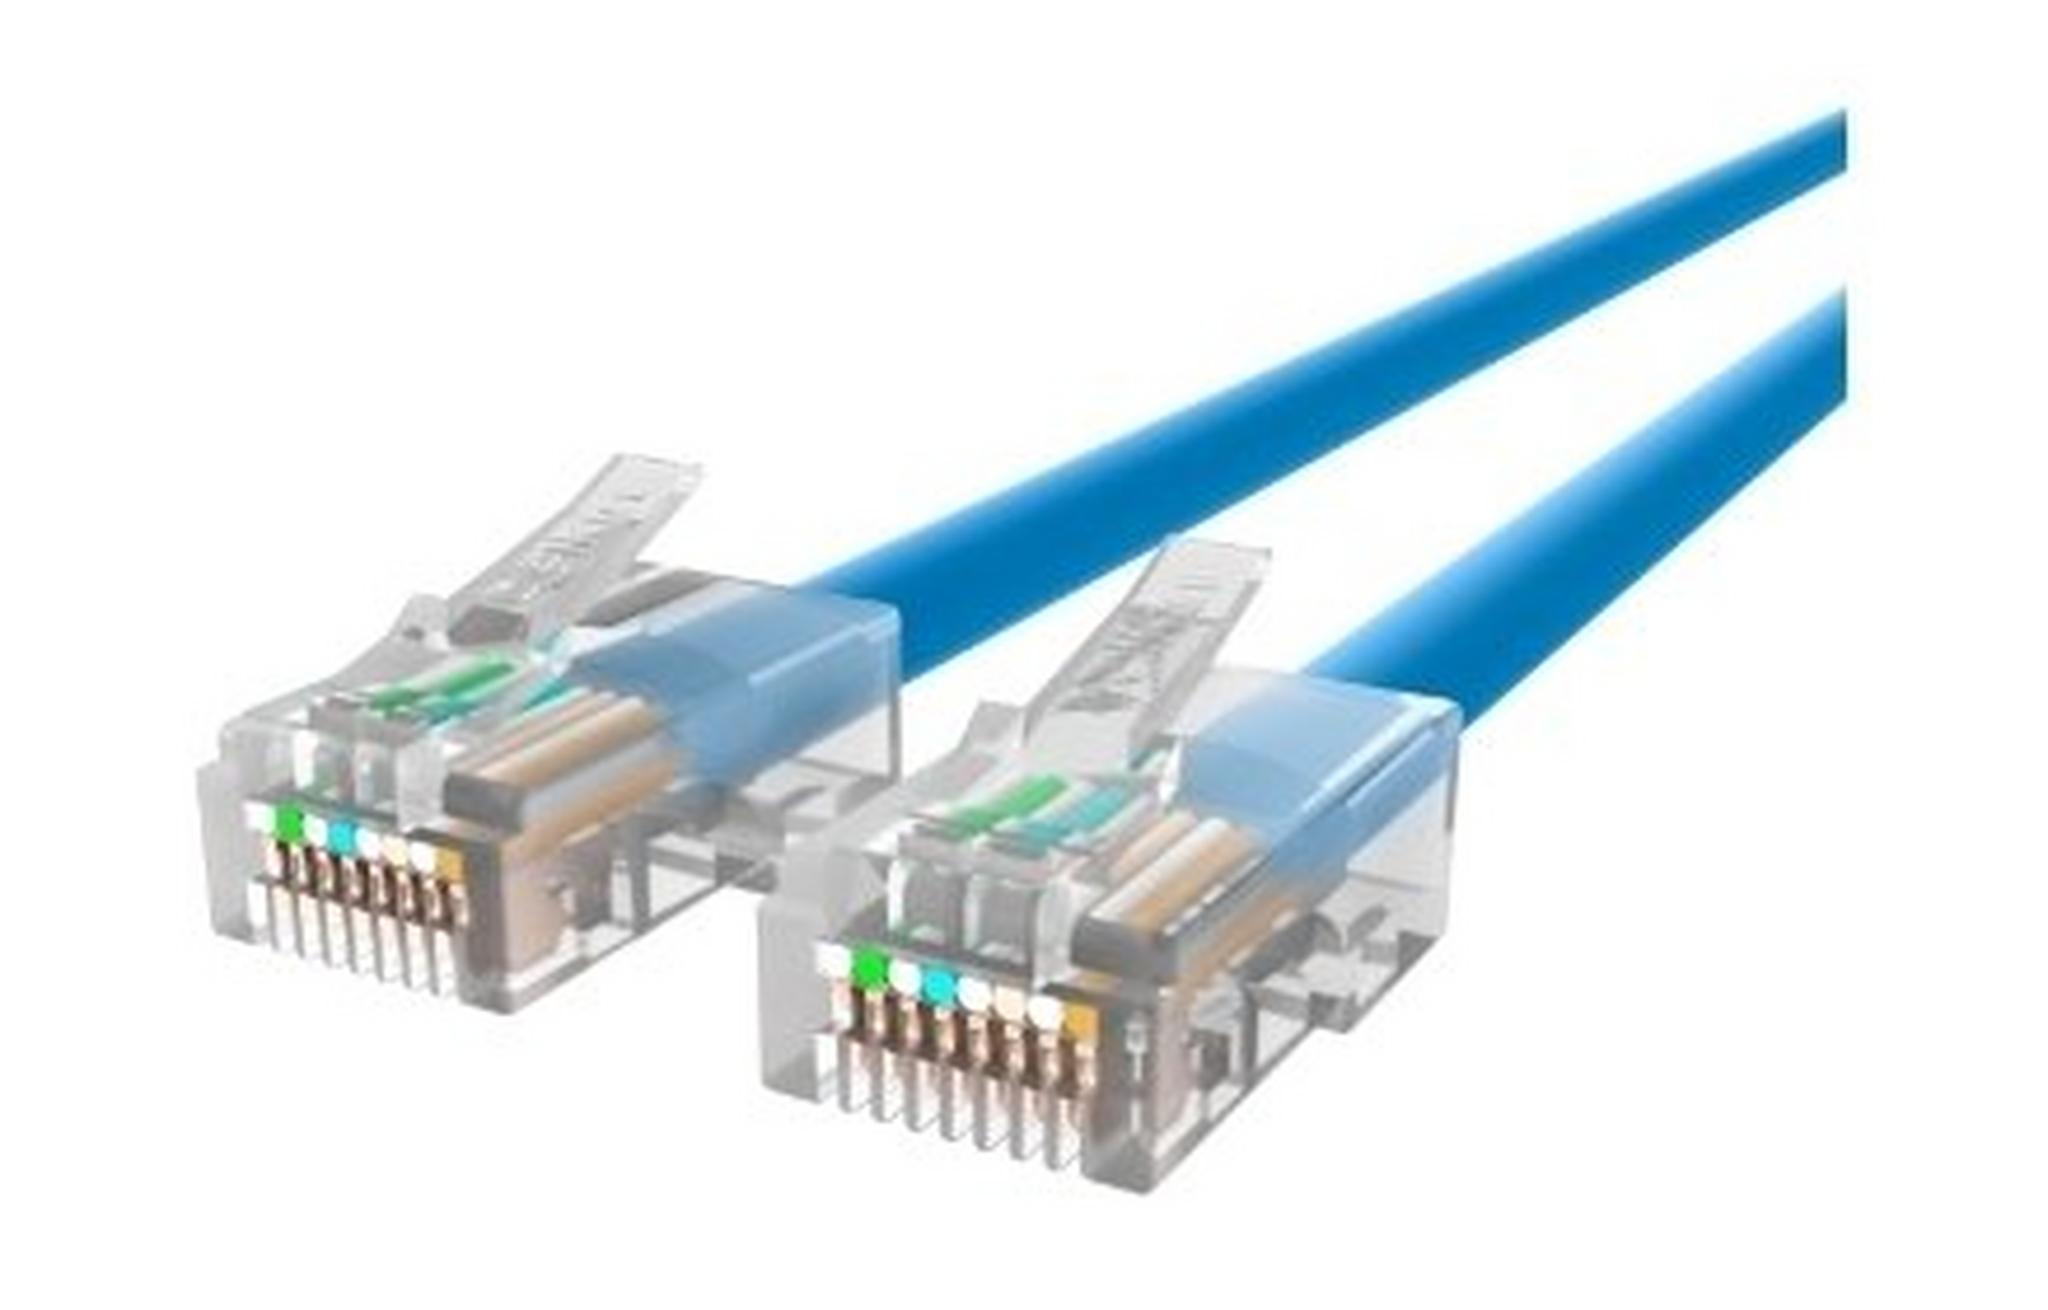 Belkin 1Meter CAT6 RJ45 Ethernet Patch Cable  (A3L981BT01MBLHS) - Blue